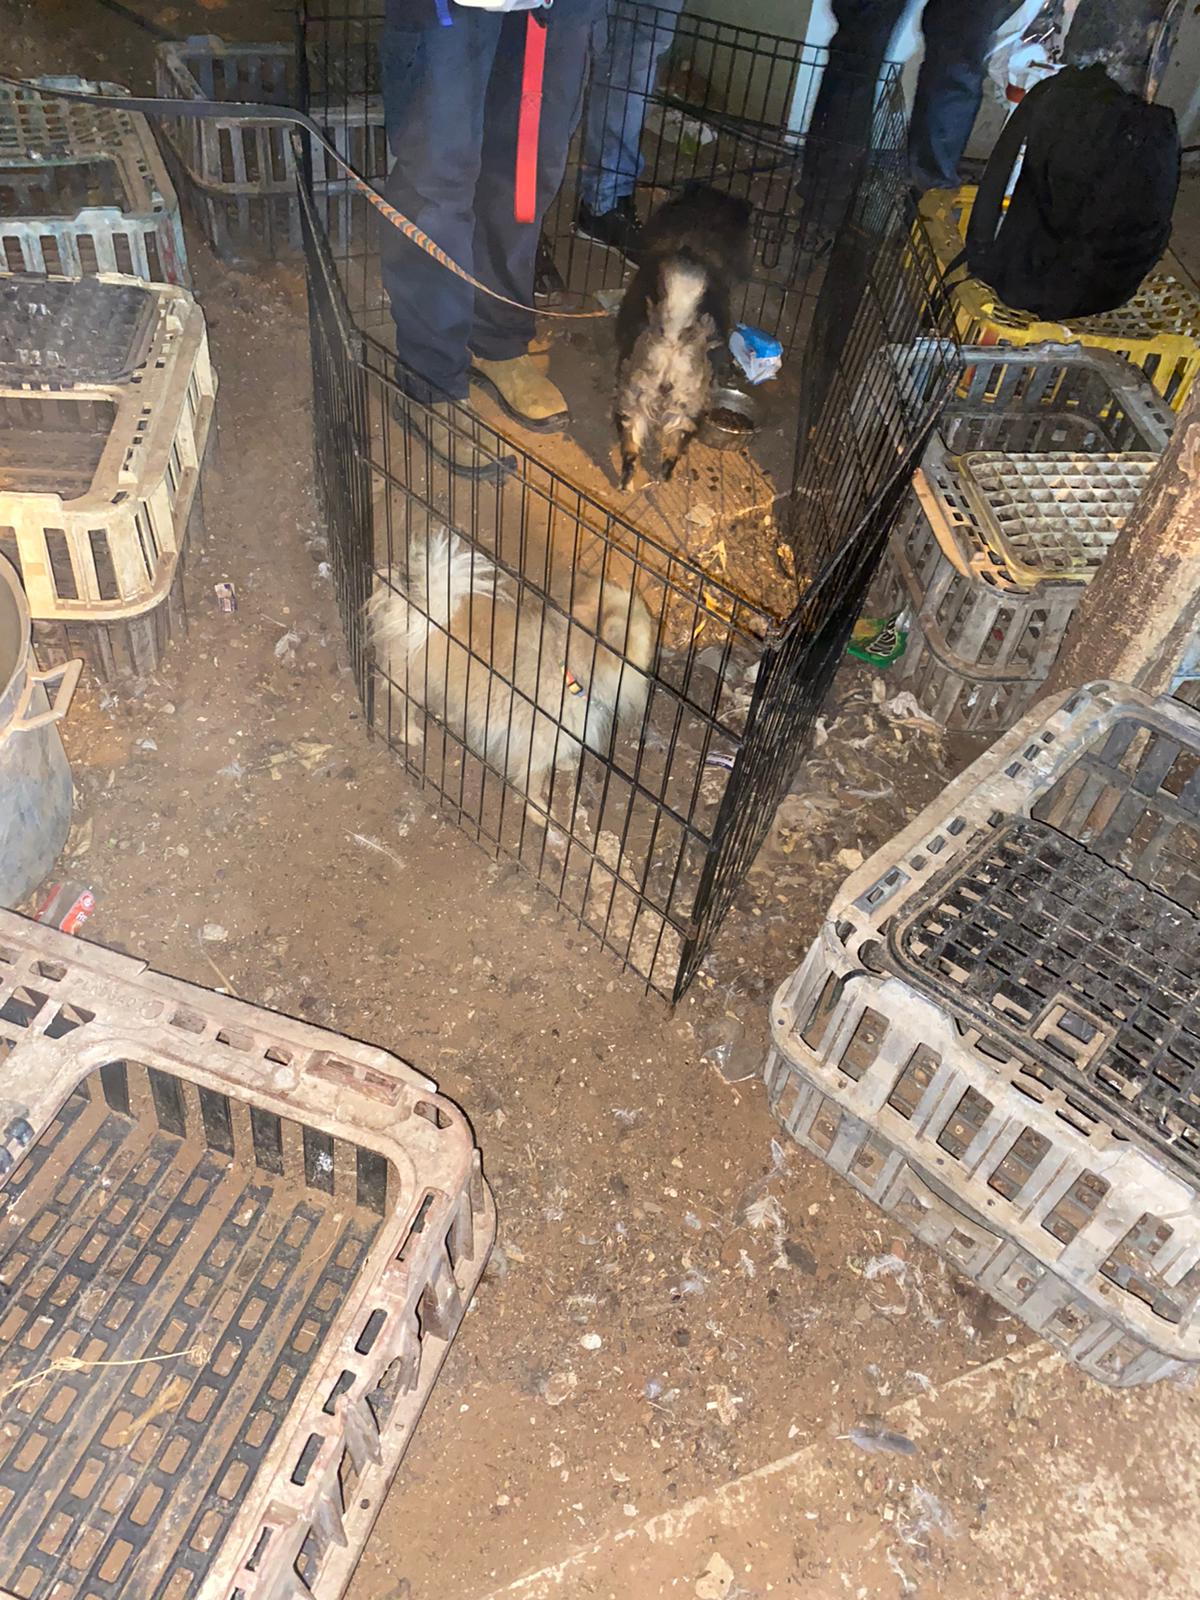 الشرطة: ضبط ذخيرة ومخدرات في حي الجواريش بالرملة ومصادرة 11 كلبا